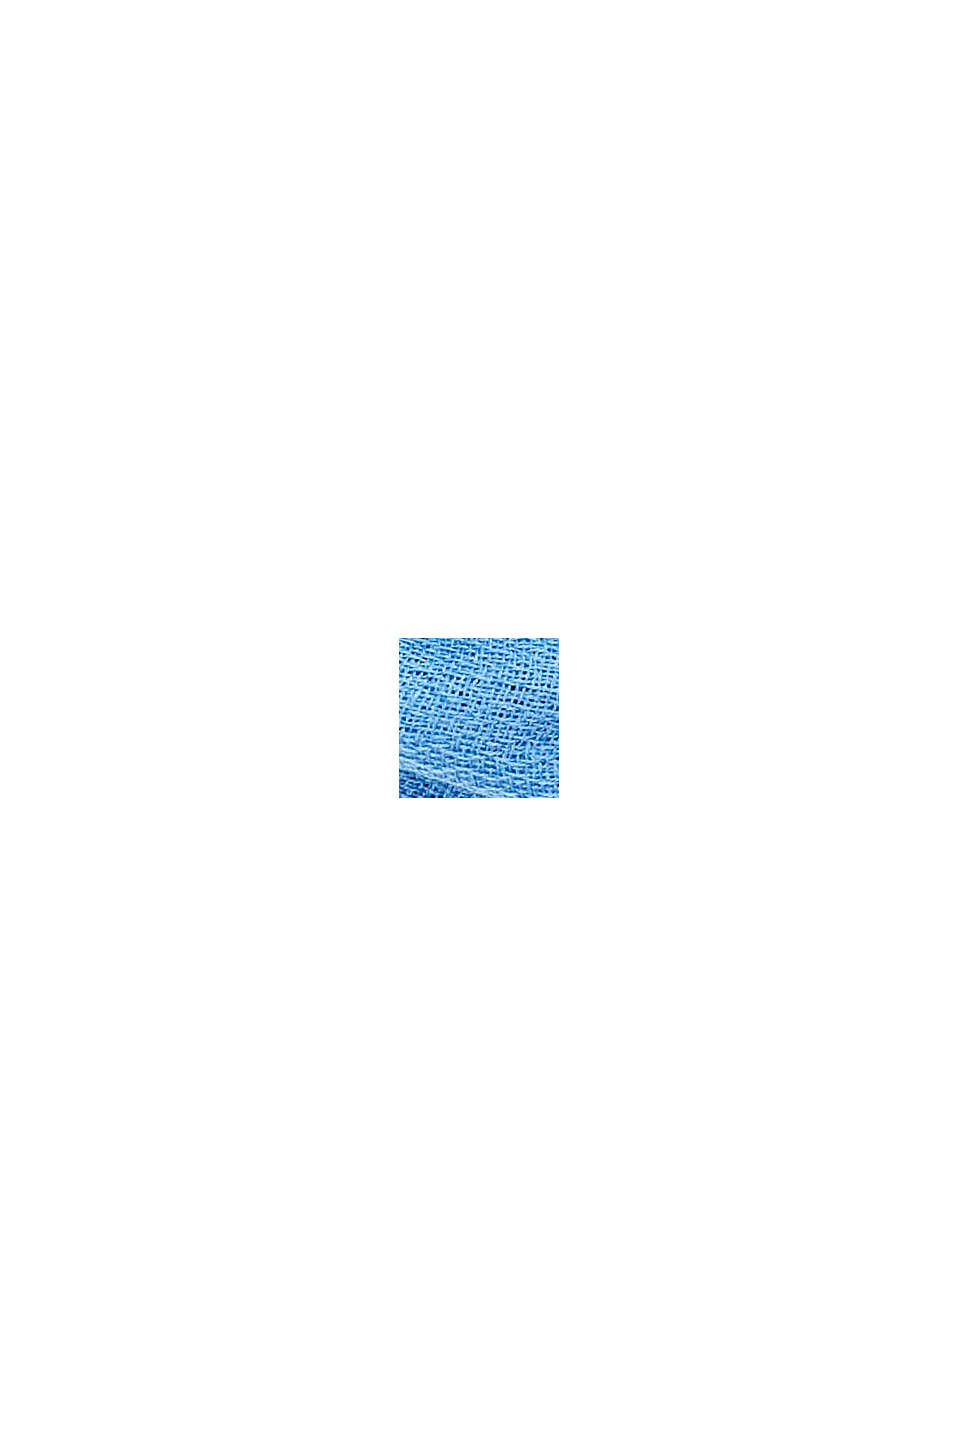 Z recyklingu: jednokolorowy szal z tkaniny o fasonie pętli, GREY BLUE, swatch